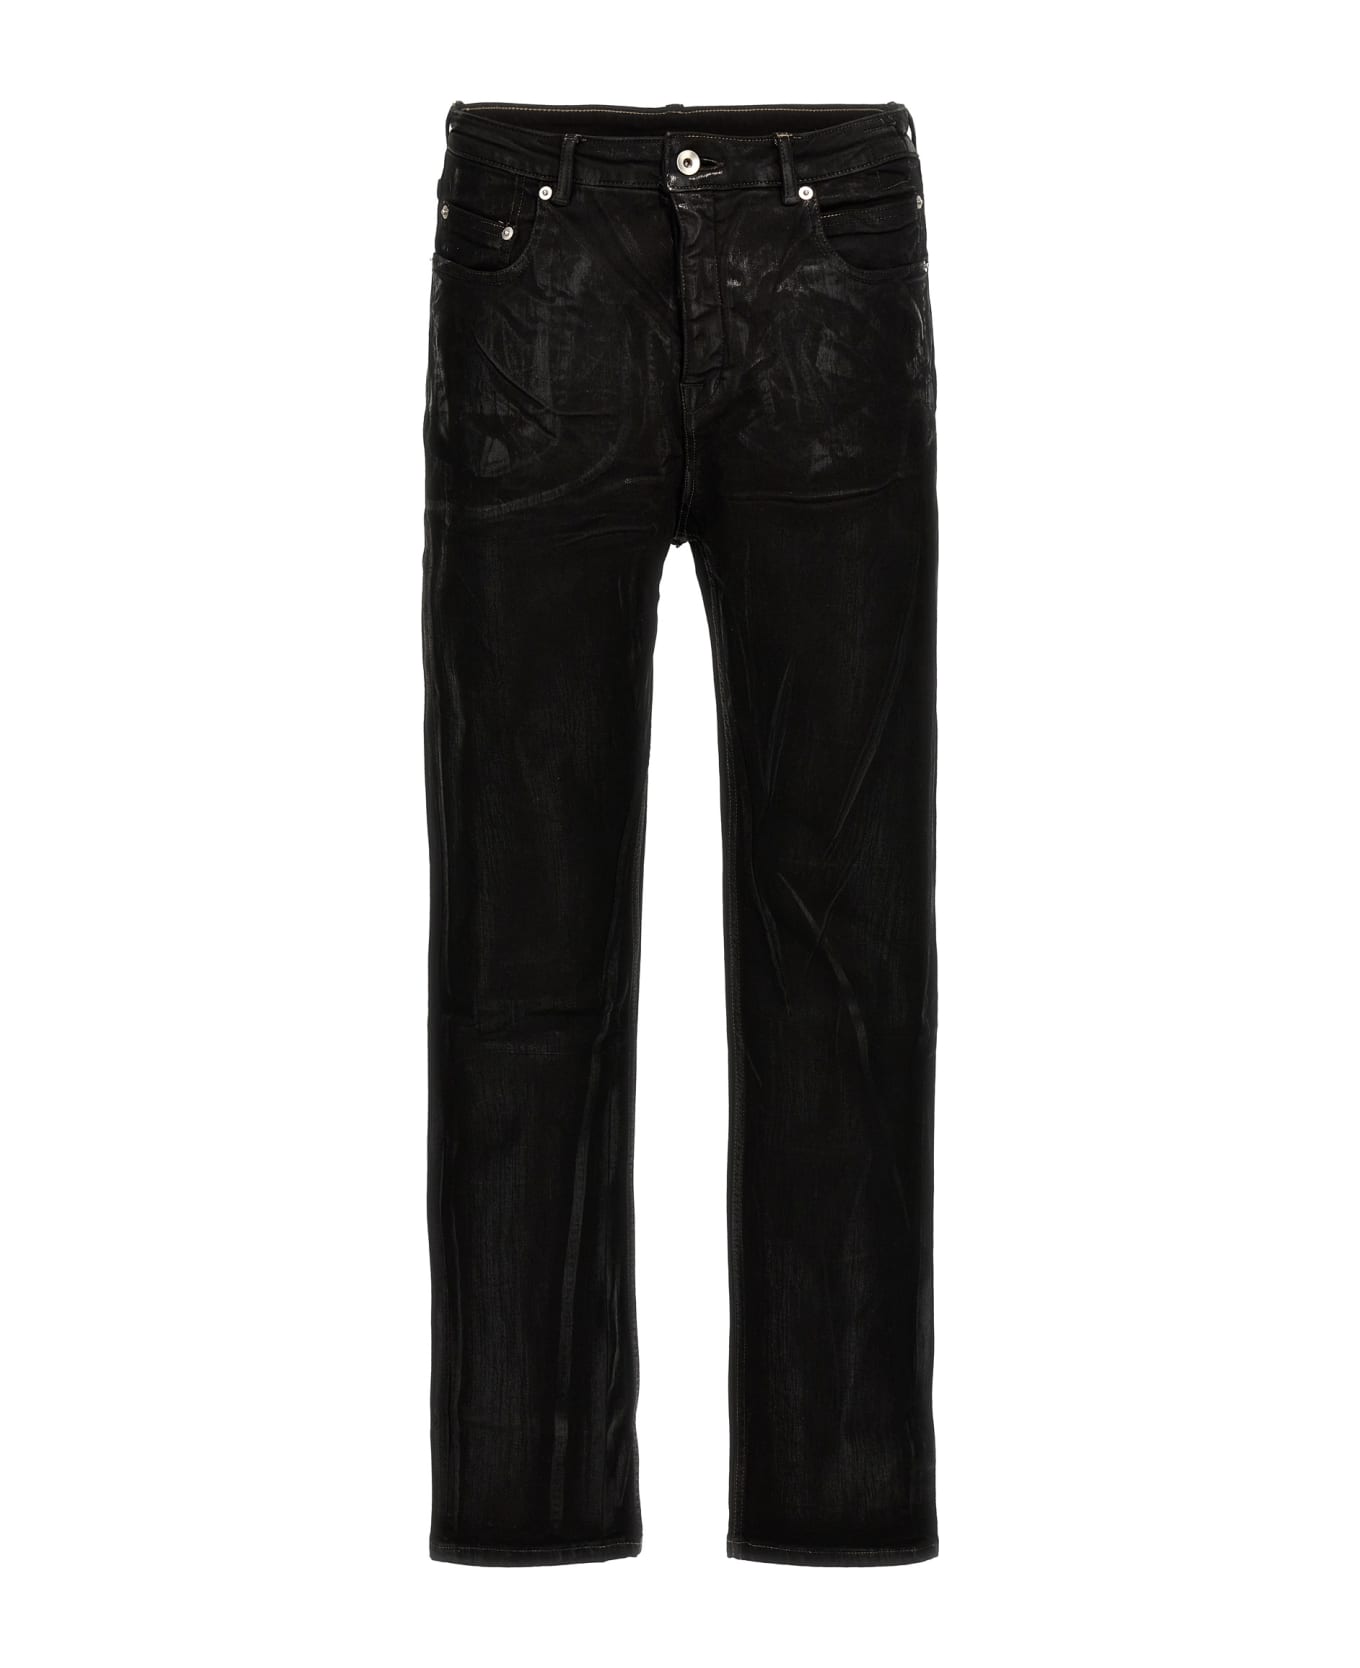 DRKSHDW 'detroit' Jeans - Black デニム